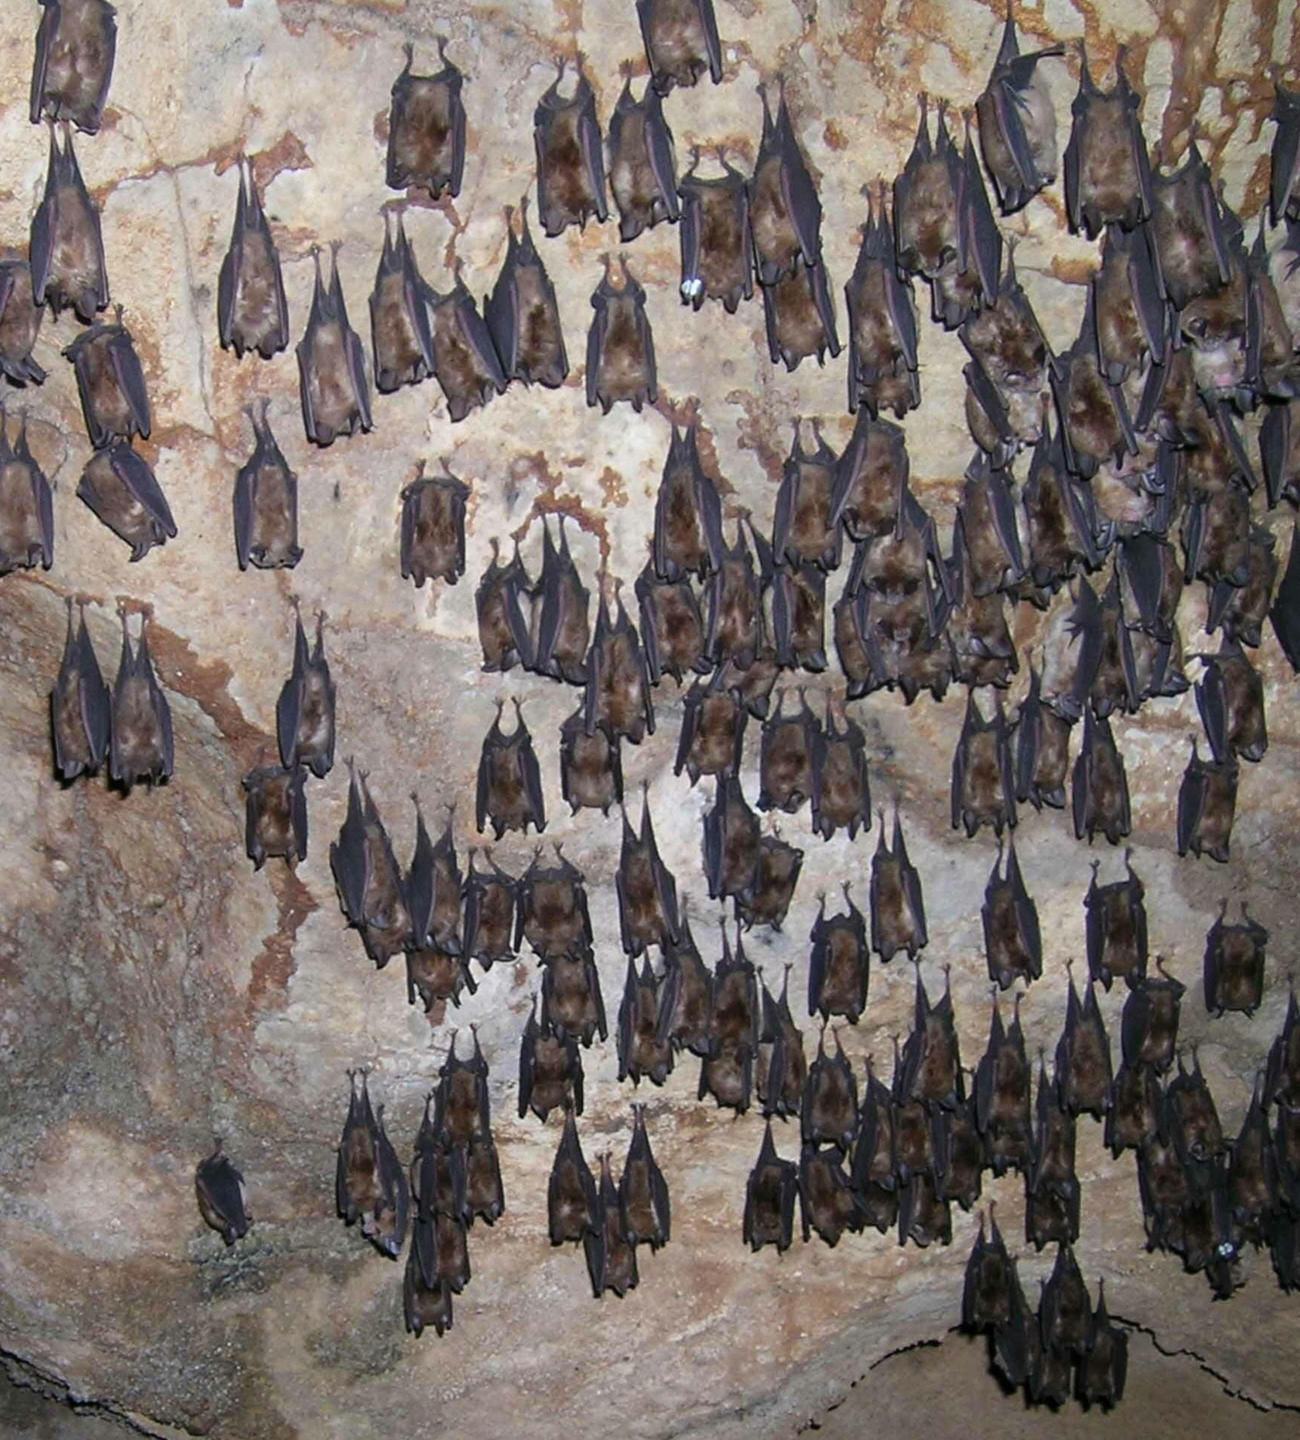 新型コロナウイルスの原因とされるコウモリの群れ。3密の条件がそろう洞窟内でウイルスが培養されている可能性が高い